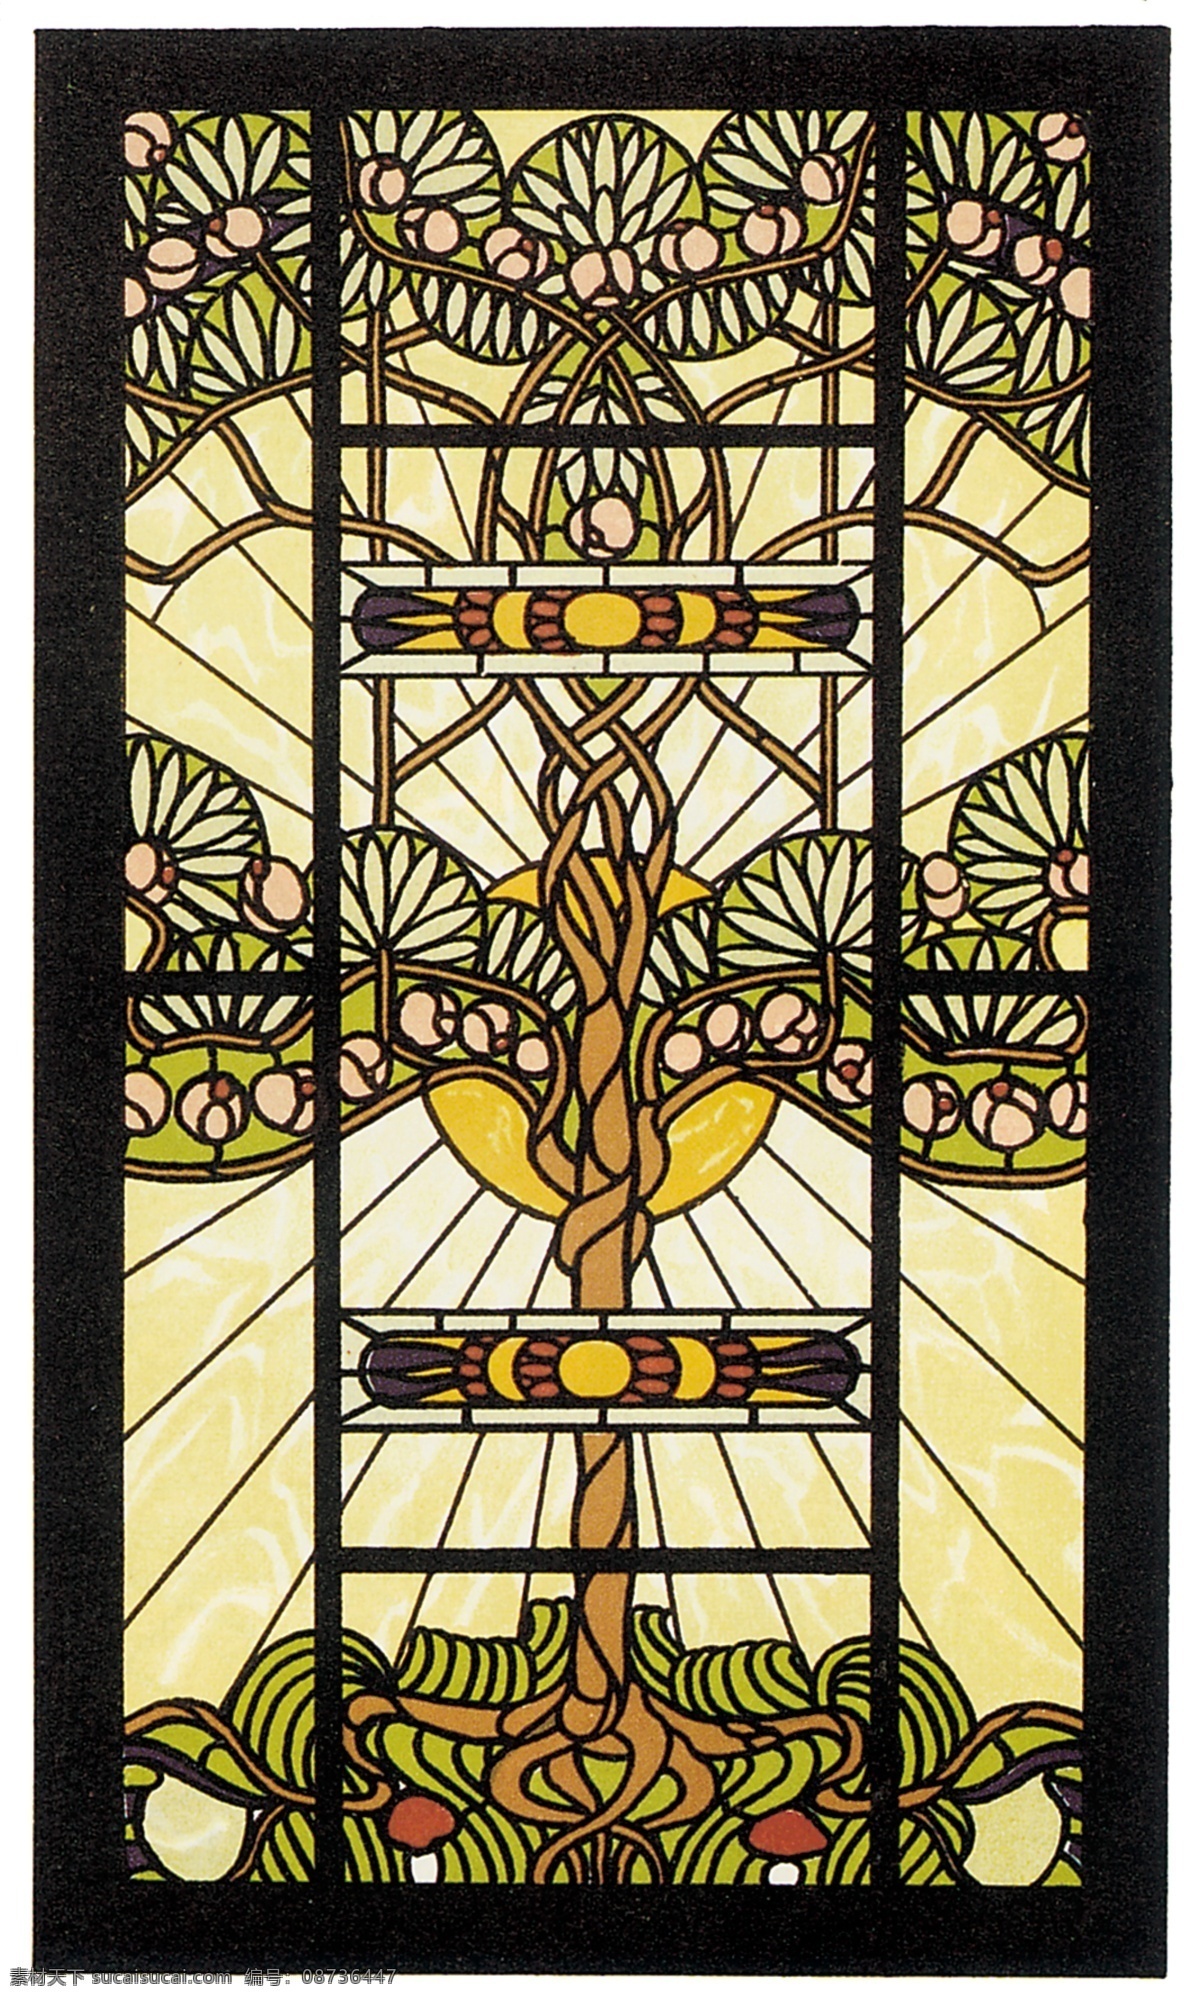 彩色 玻璃 图案 传统 古典 教堂 欧洲 设计素材 彩色玻璃图案 宗教 宗教信仰 文化艺术